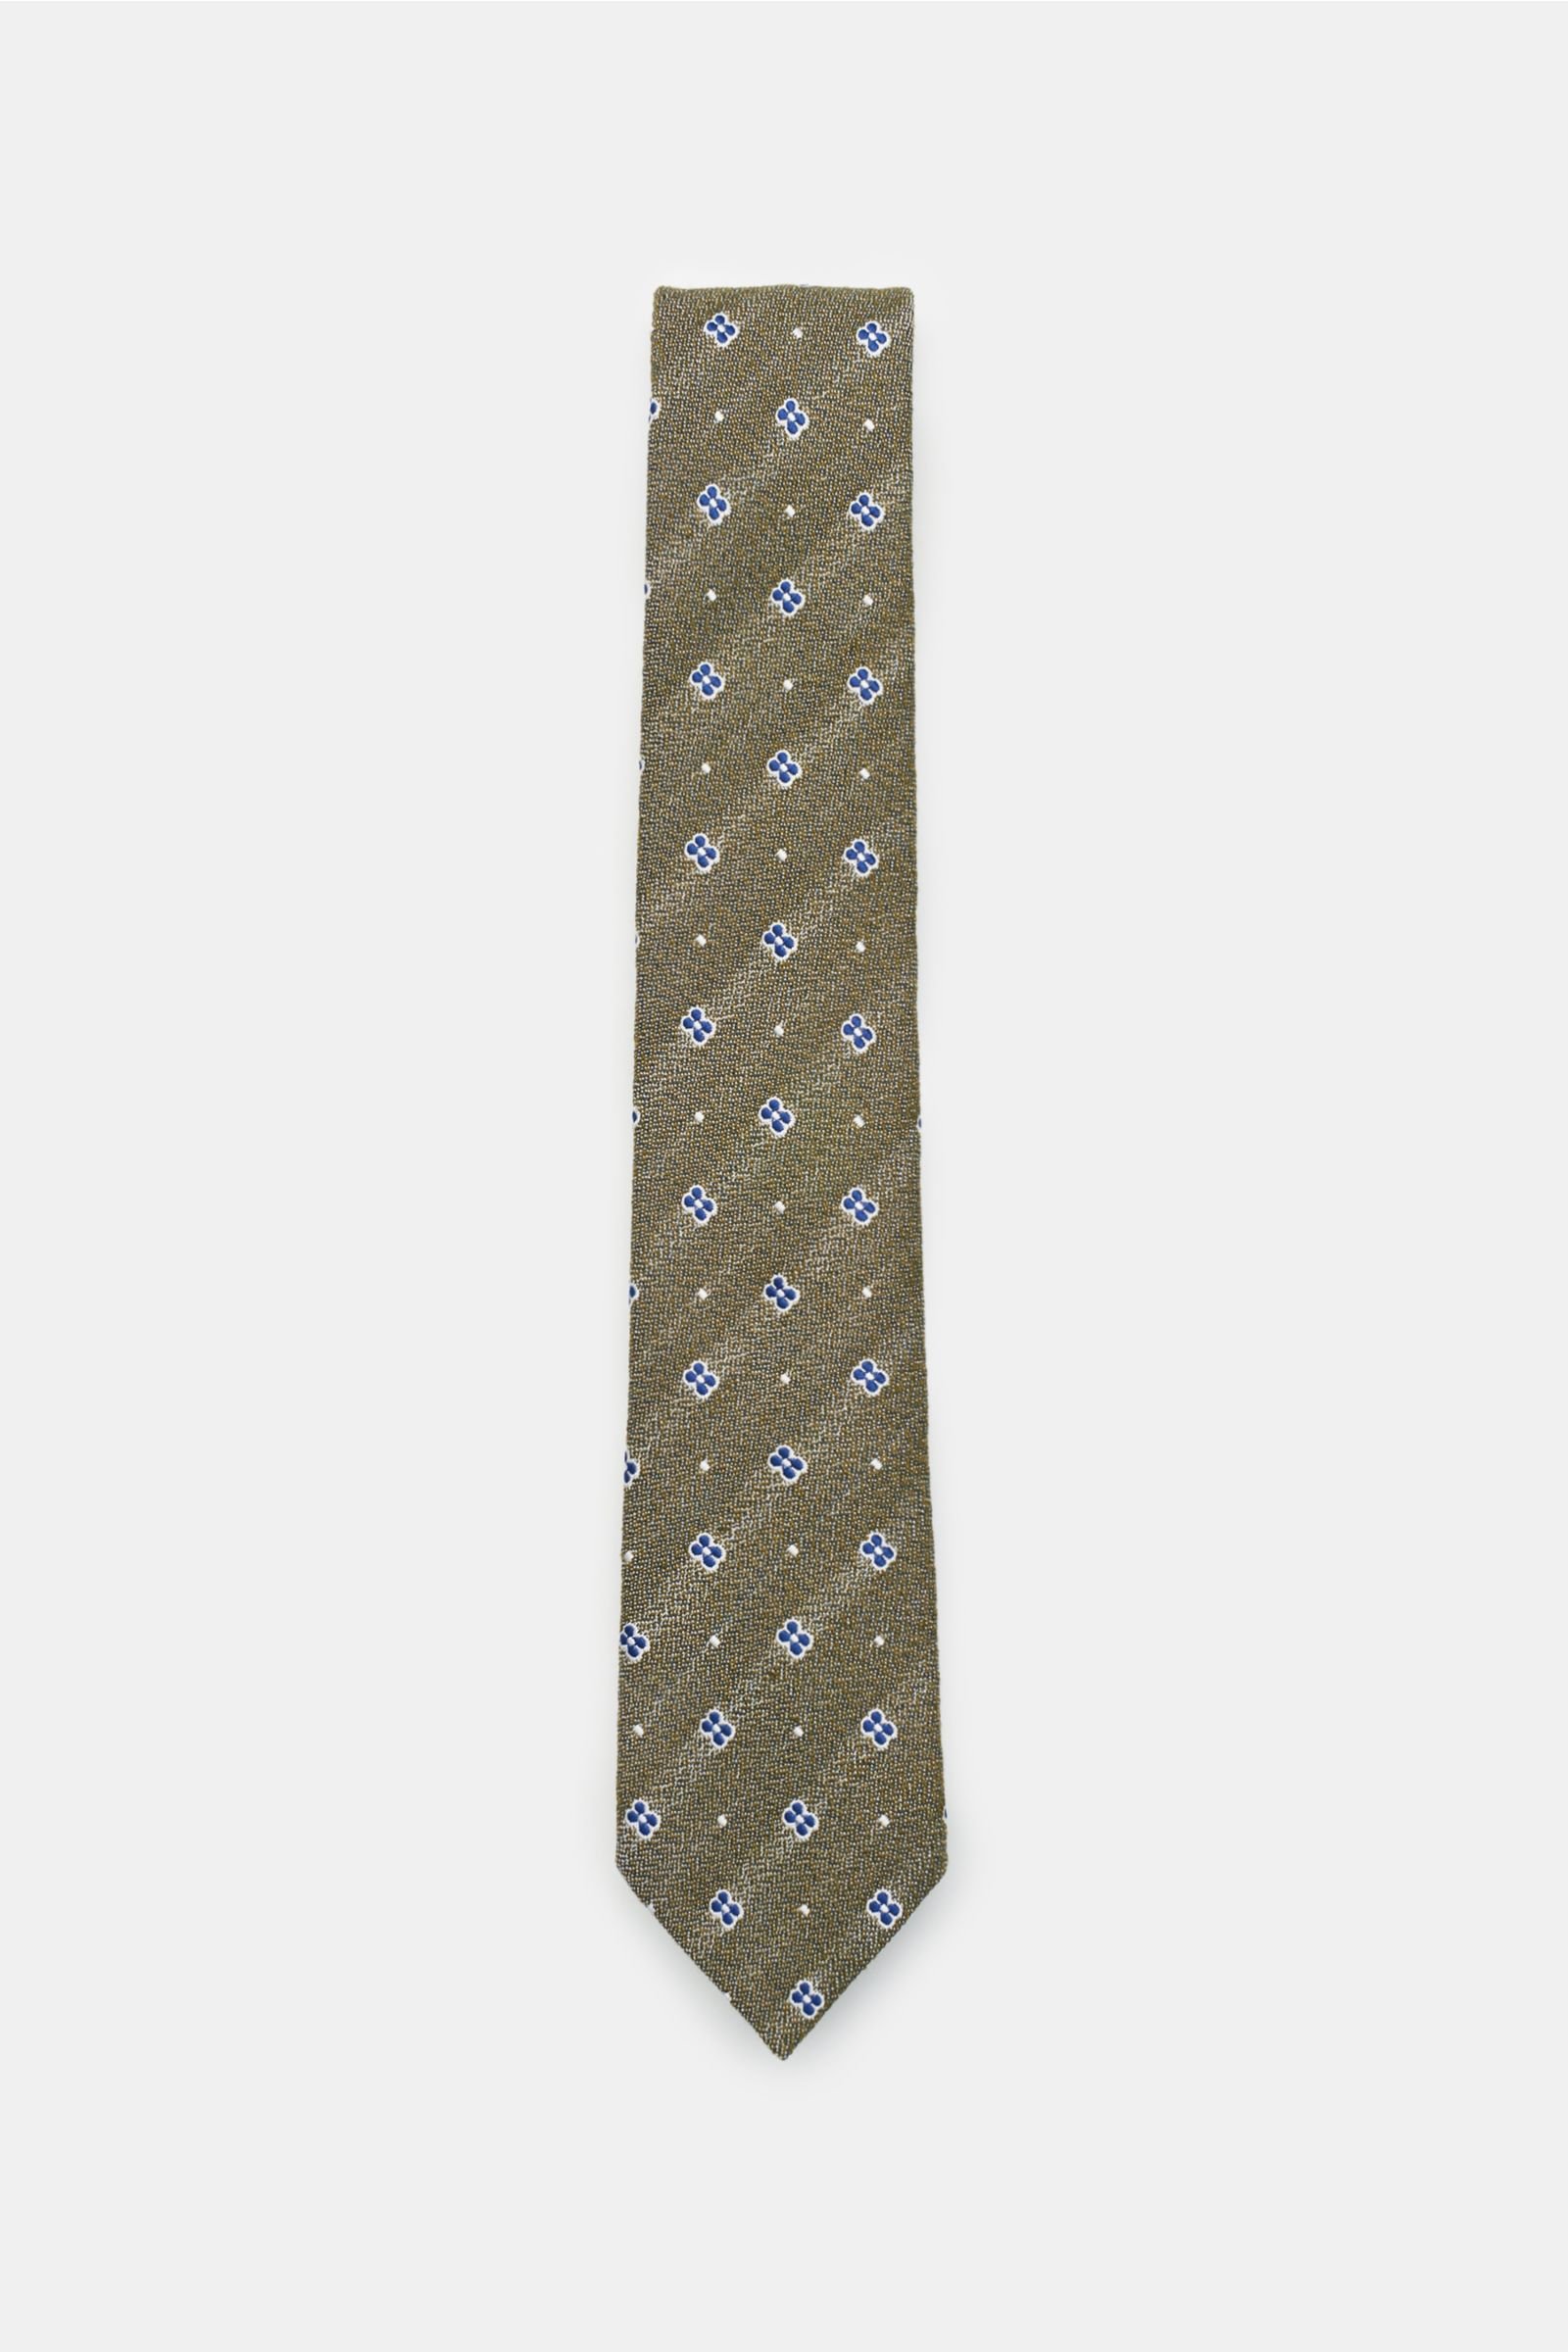 Tie olive/blue patterned